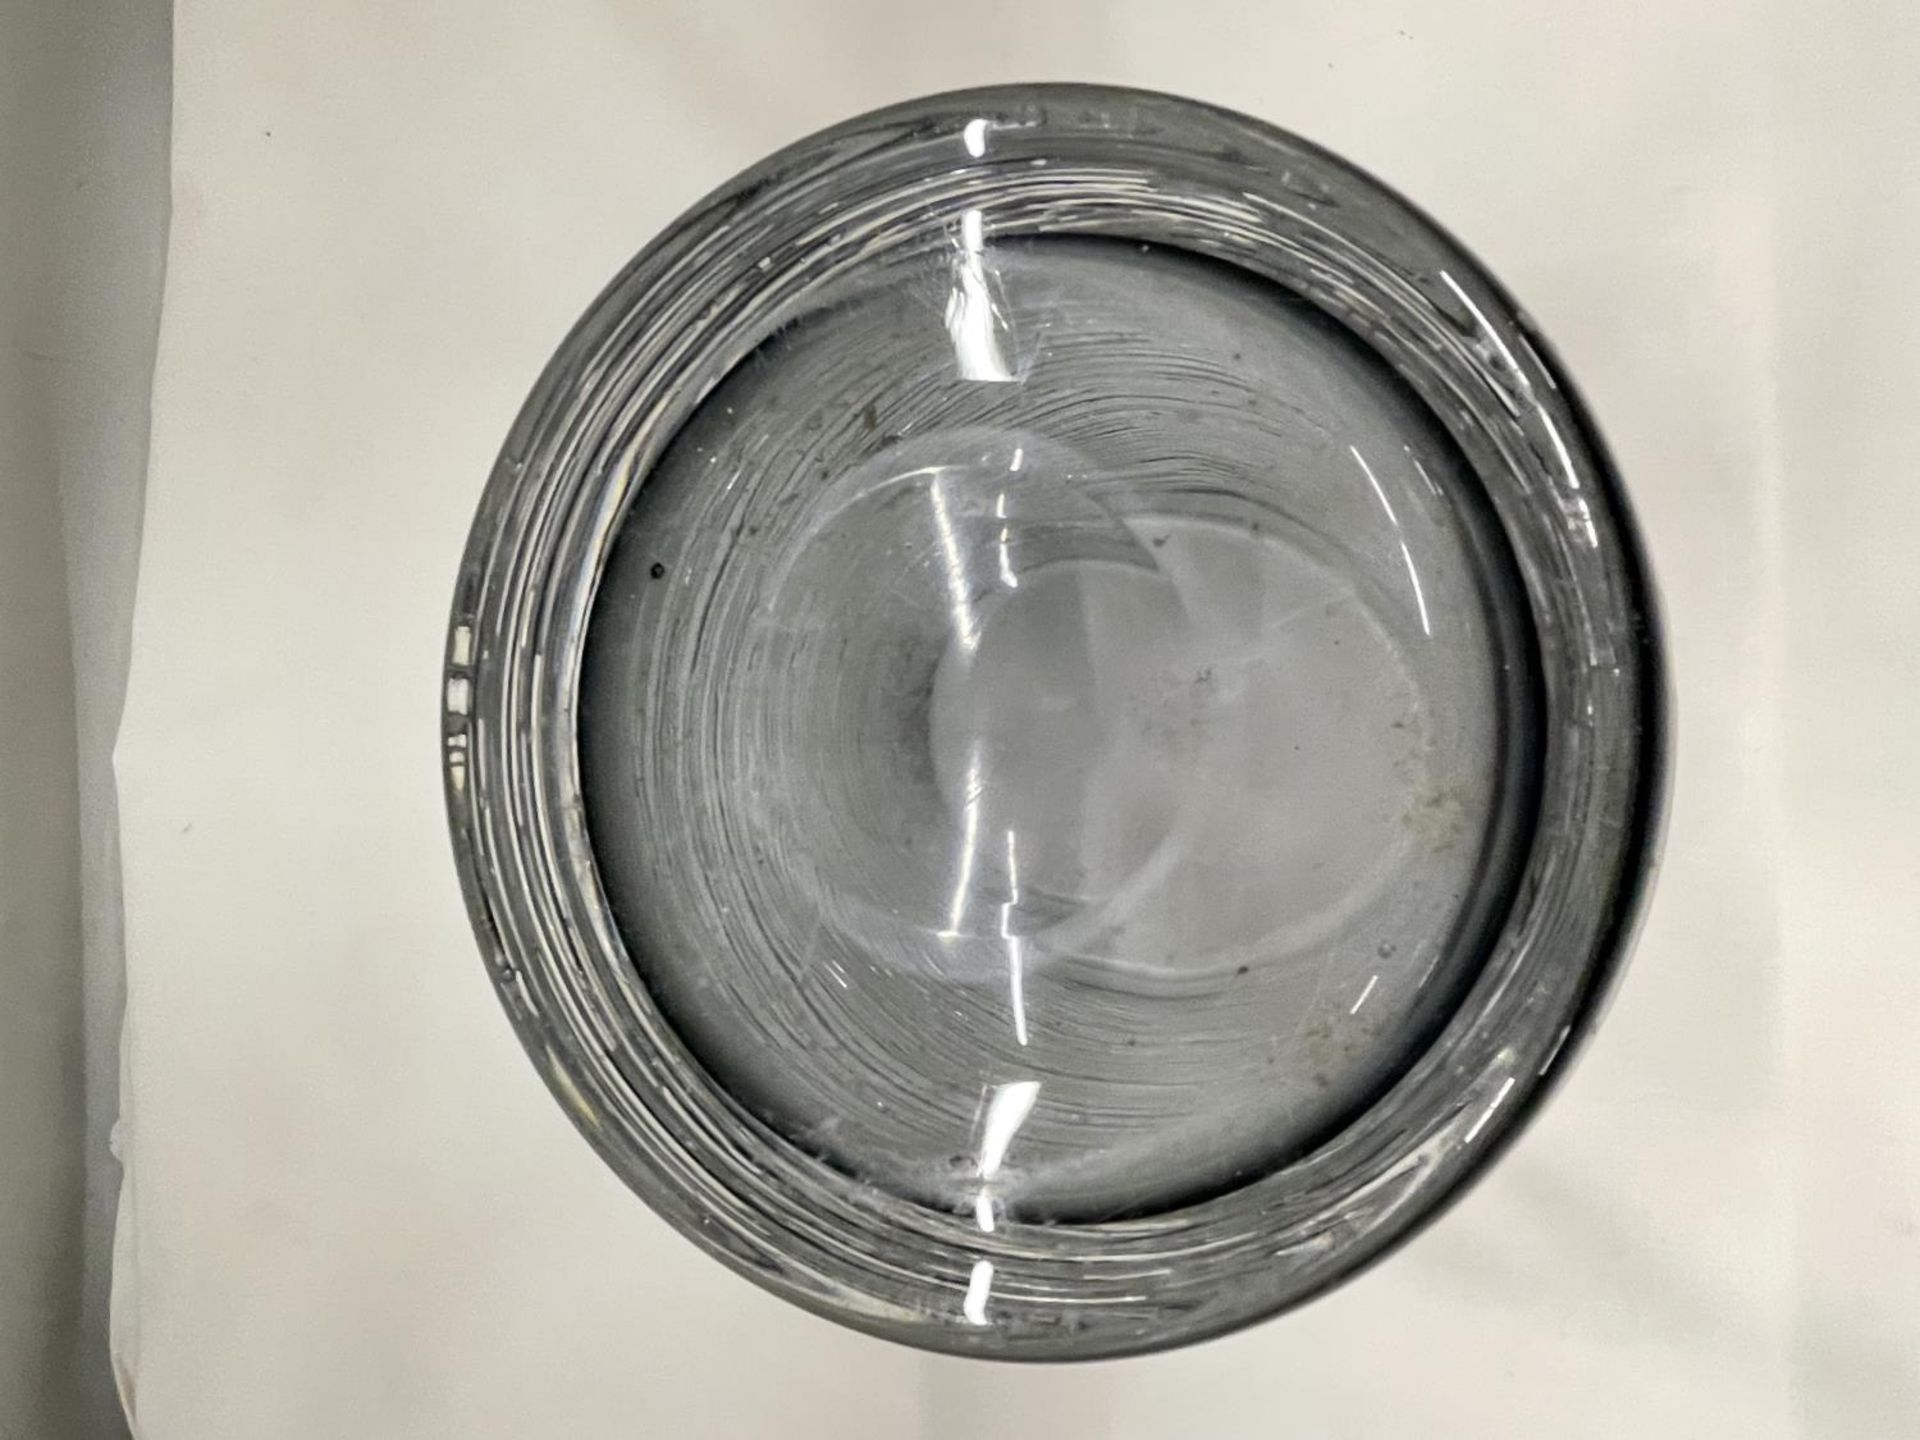 A SPUN GLASS VASE POSSIBLY BY BENGT EDENFELDT 15CM HIGH - Image 4 of 5